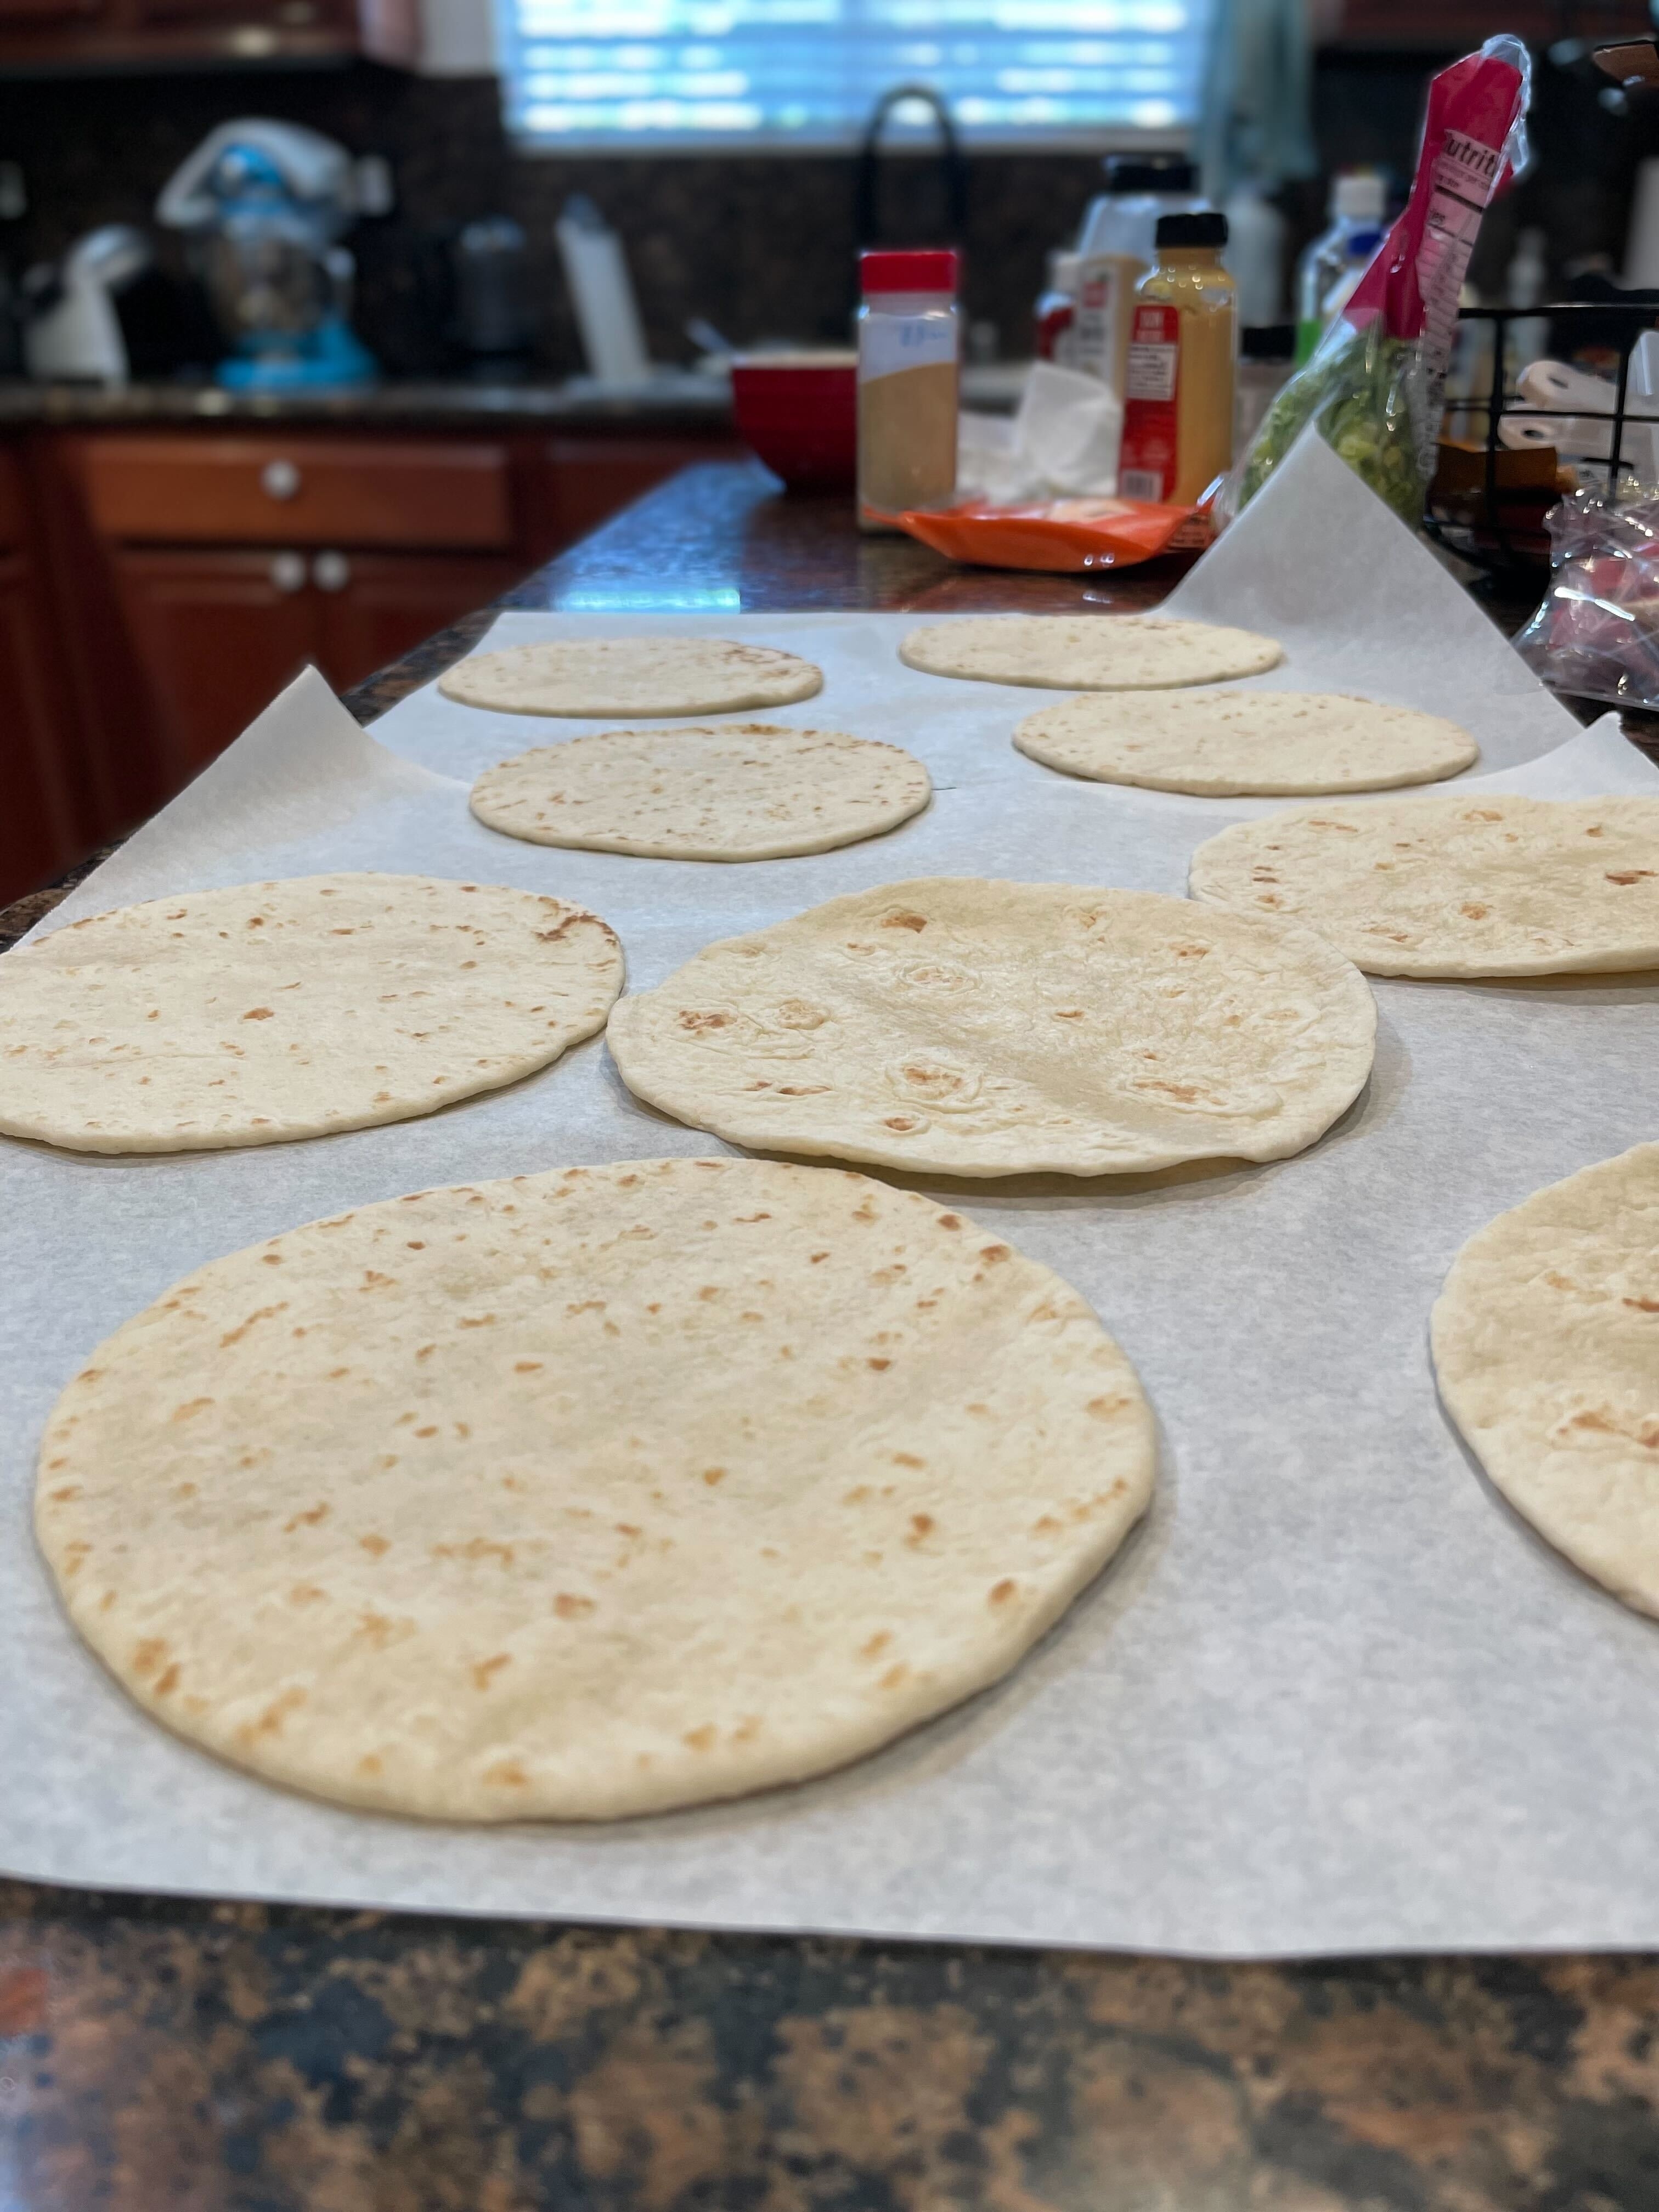 Tortillas on a countertop